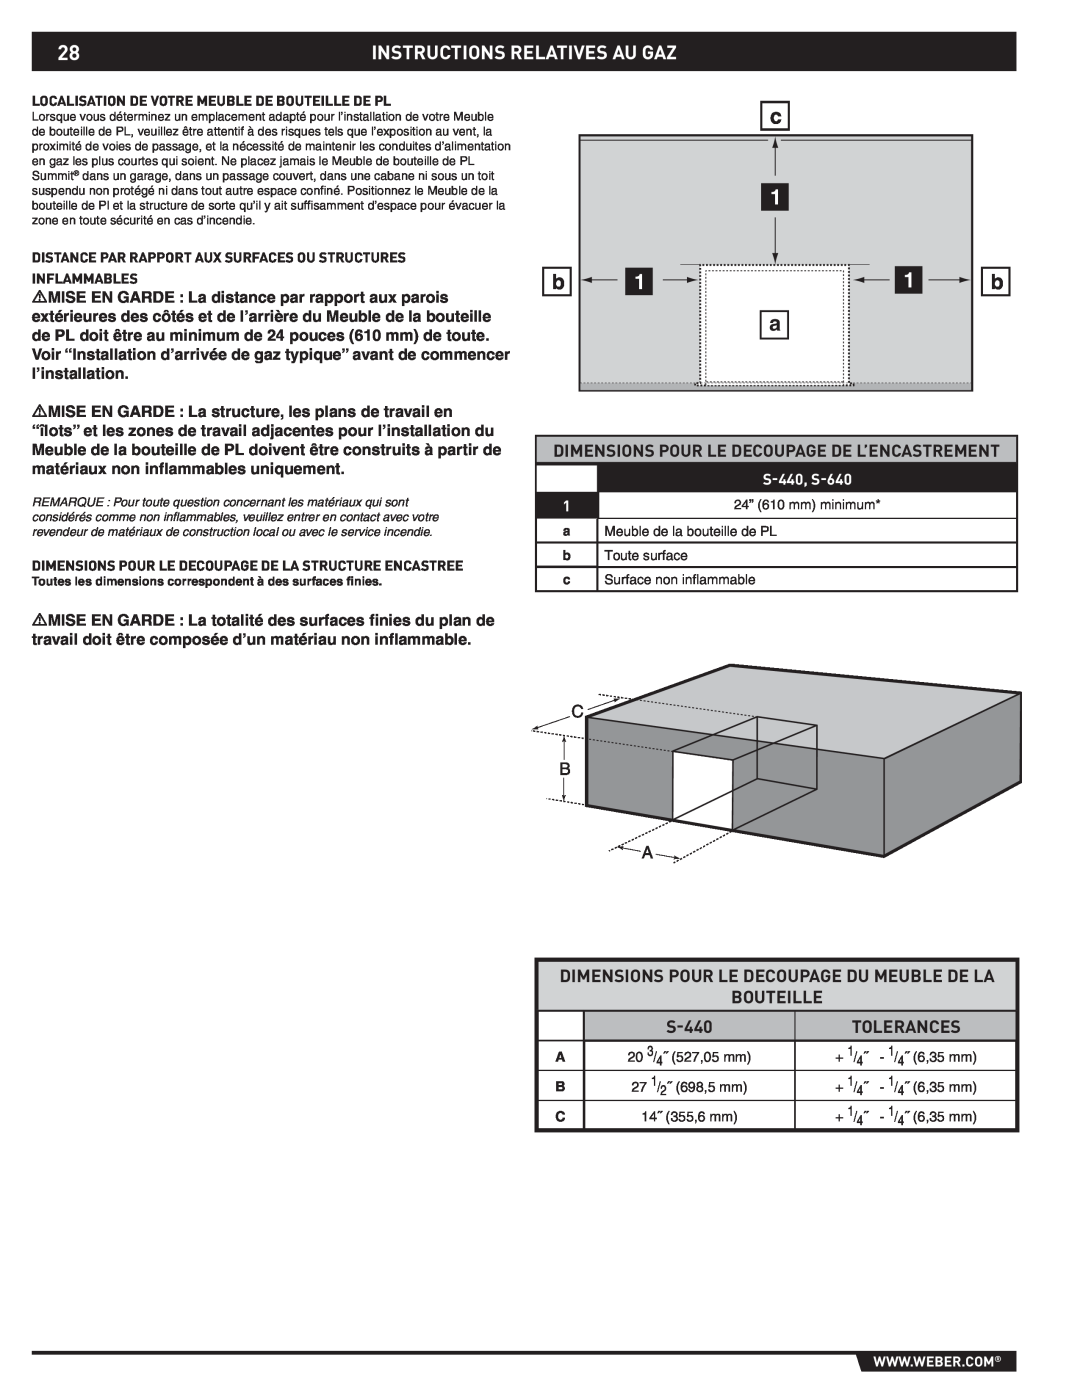 Summit 43176 Instructions Relatives Au Gaz, Dimensions Pour Le Decoupage De L’Encastrement, Bouteille, S-440, Tolerances 